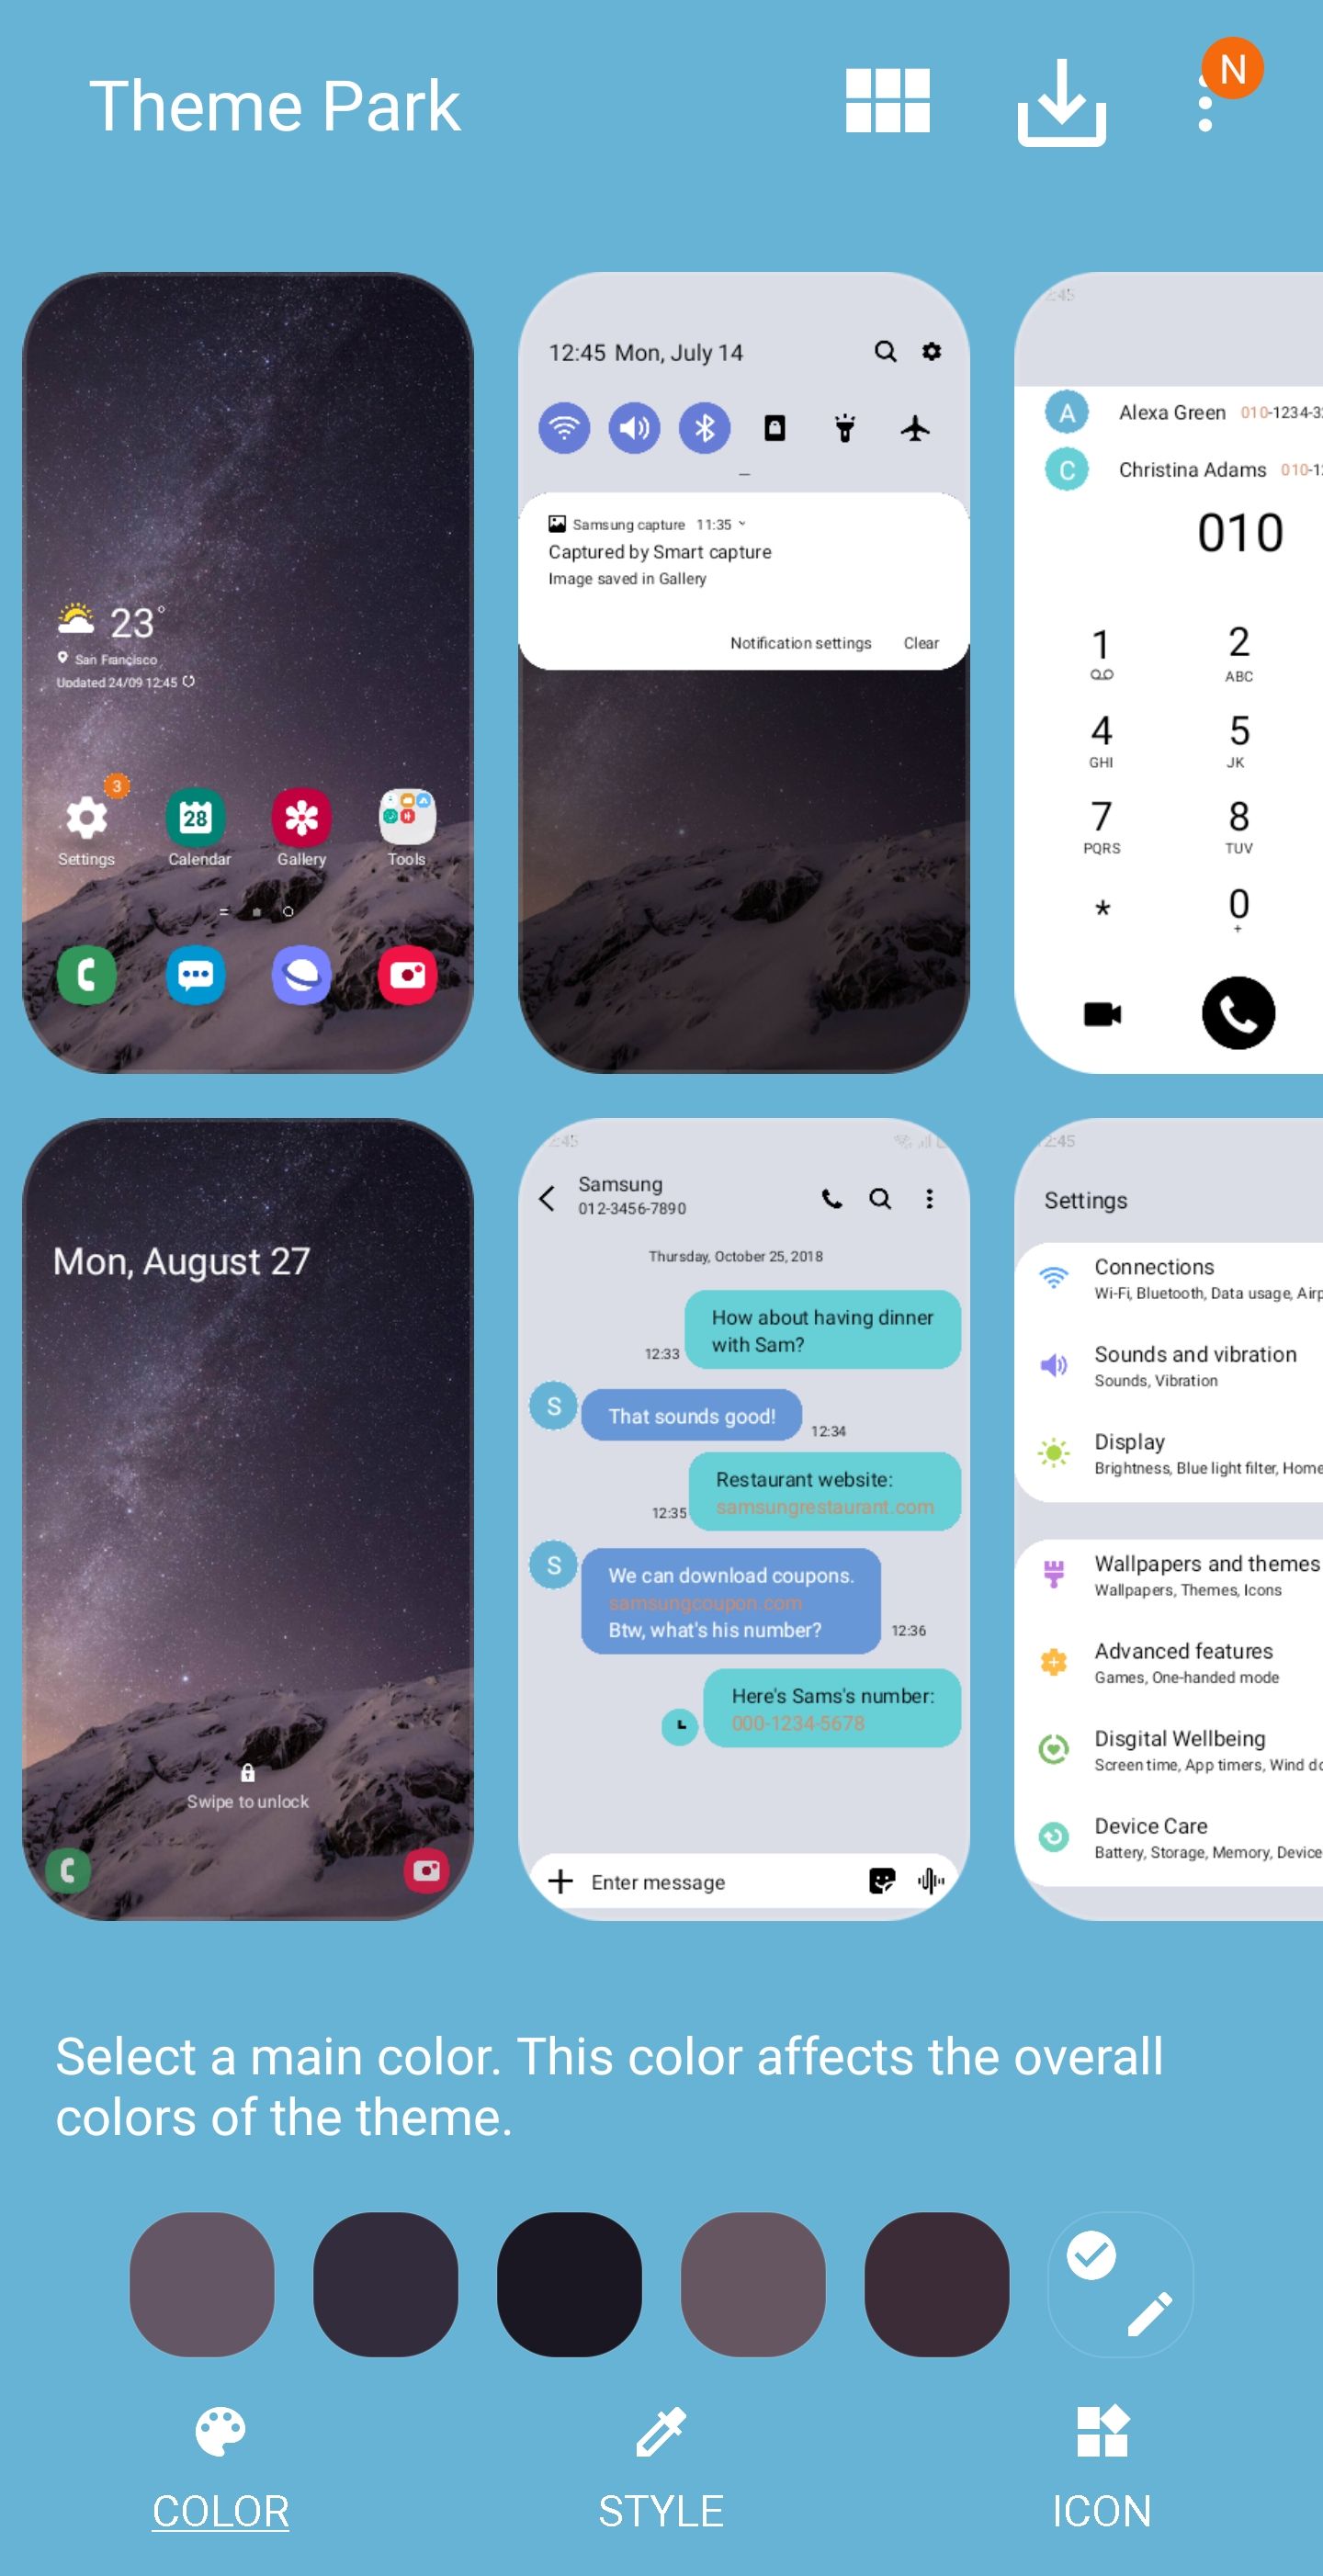 Đổi màu sắc cho tin nhắn trên điện thoại Samsung sẽ khiến trải nghiệm của bạn thêm phần thú vị và độc đáo. Thông qua Samsung Community, bạn sẽ được hướng dẫn cách thực hiện thao tác này một cách chi tiết và dễ hiểu. Hãy xem các hình ảnh liên quan để có thêm kinh nghiệm.